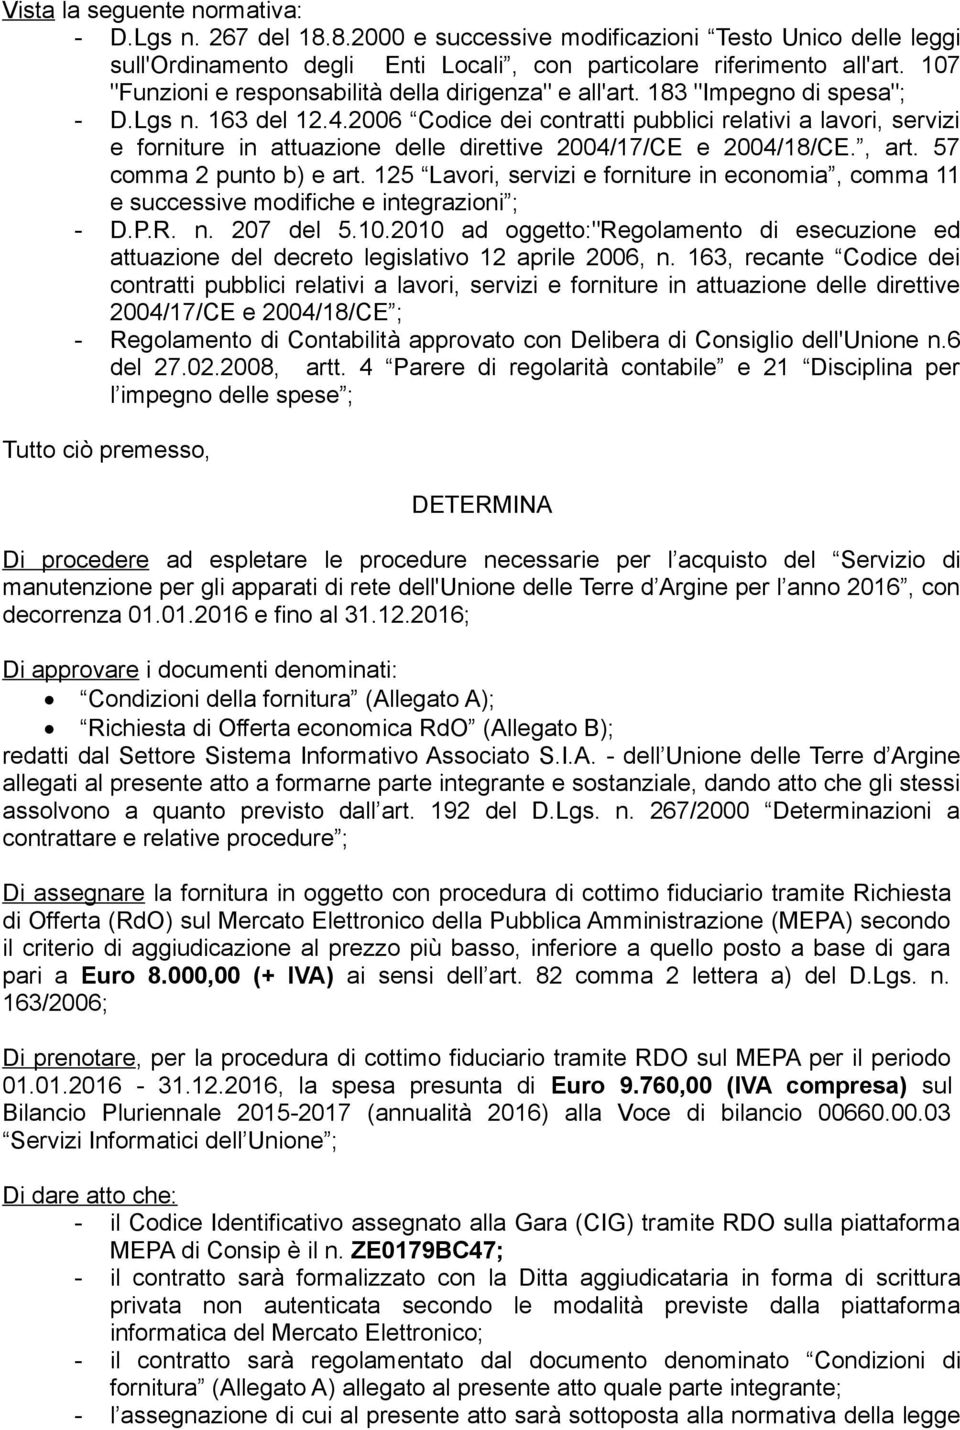 2006 Codice dei contratti pubblici relativi a lavori, servizi e forniture in attuazione delle direttive 2004/17/CE e 2004/18/CE., art. 57 comma 2 punto b) e art.